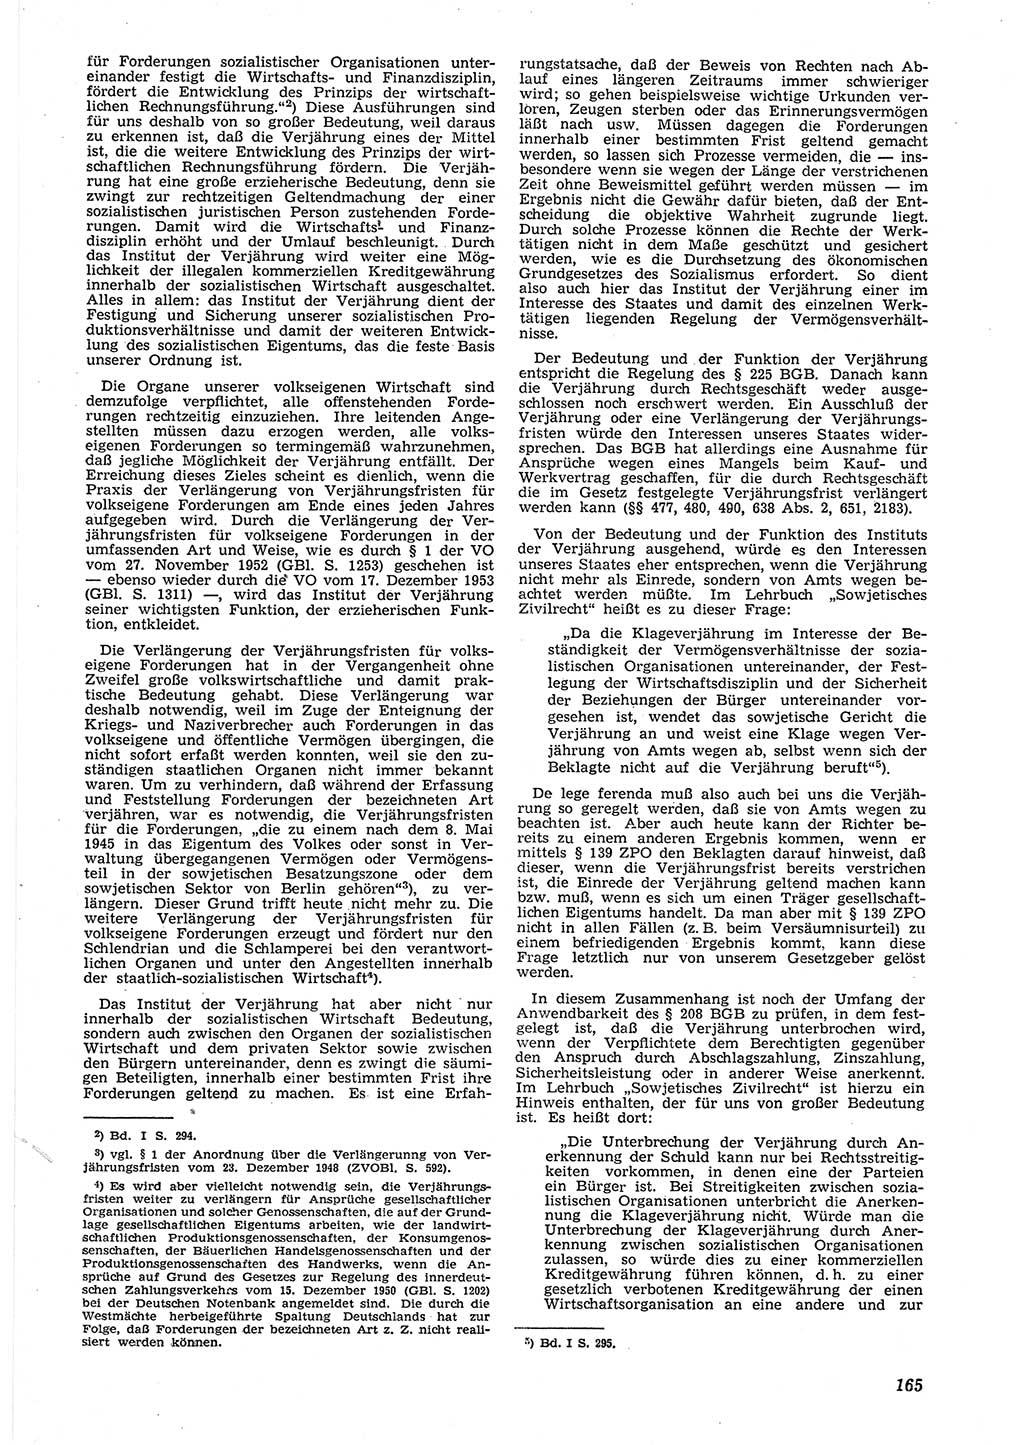 Neue Justiz (NJ), Zeitschrift für Recht und Rechtswissenschaft [Deutsche Demokratische Republik (DDR)], 8. Jahrgang 1954, Seite 165 (NJ DDR 1954, S. 165)